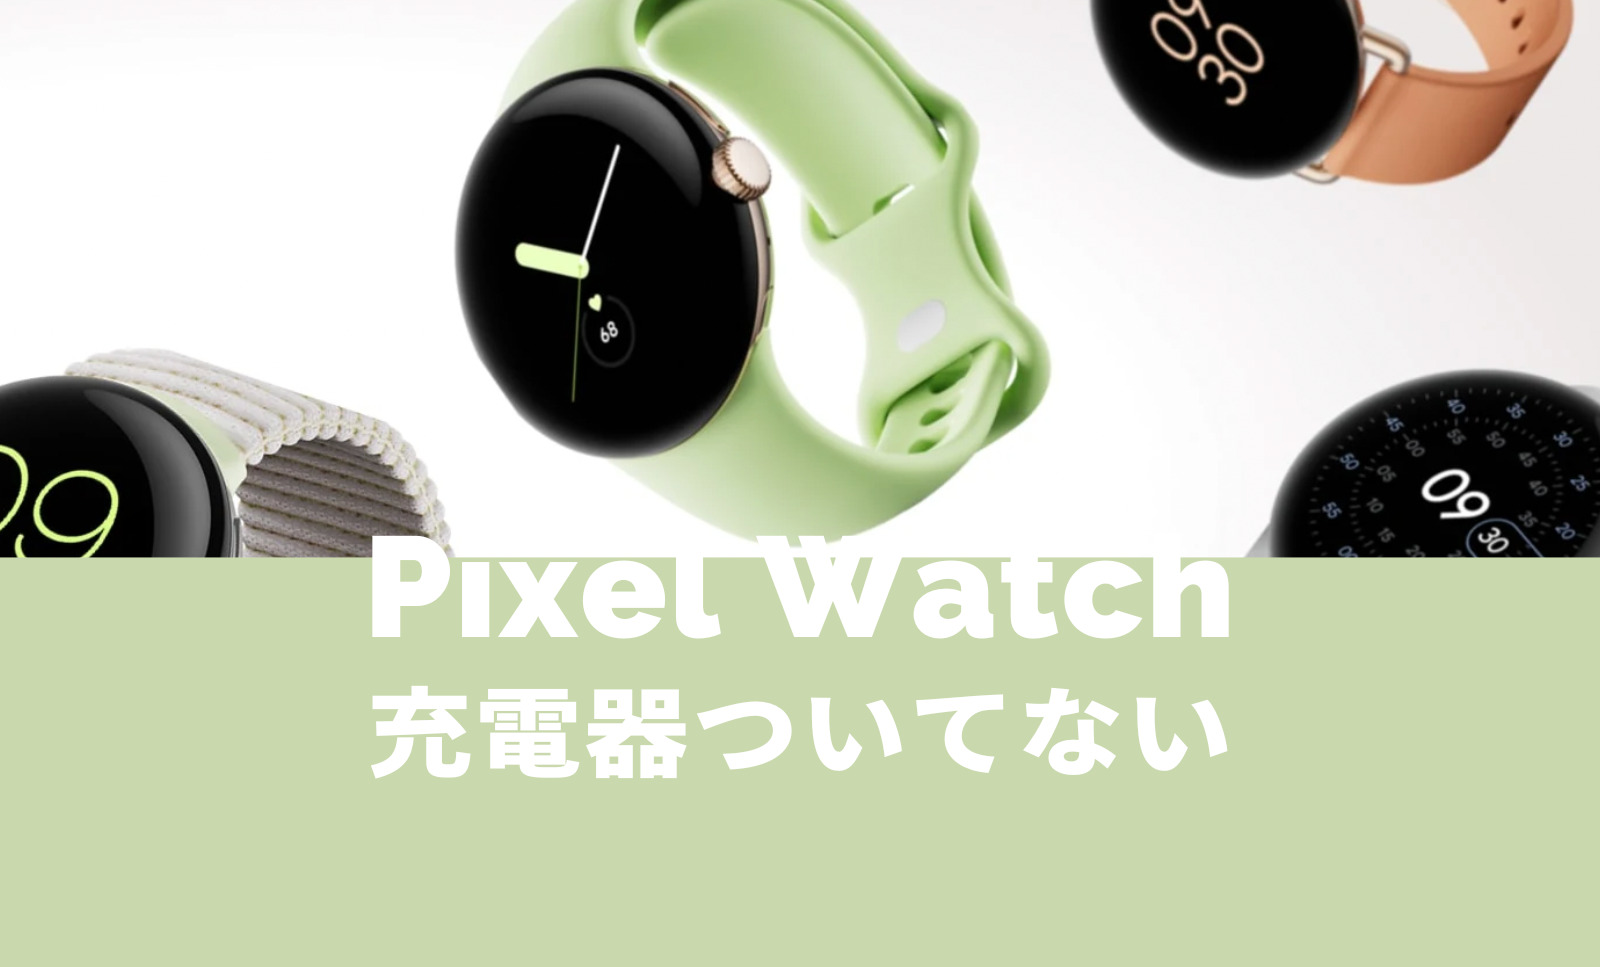 Pixel Watch(ピクセルウォッチ)は充電器ついてない&別売りになる